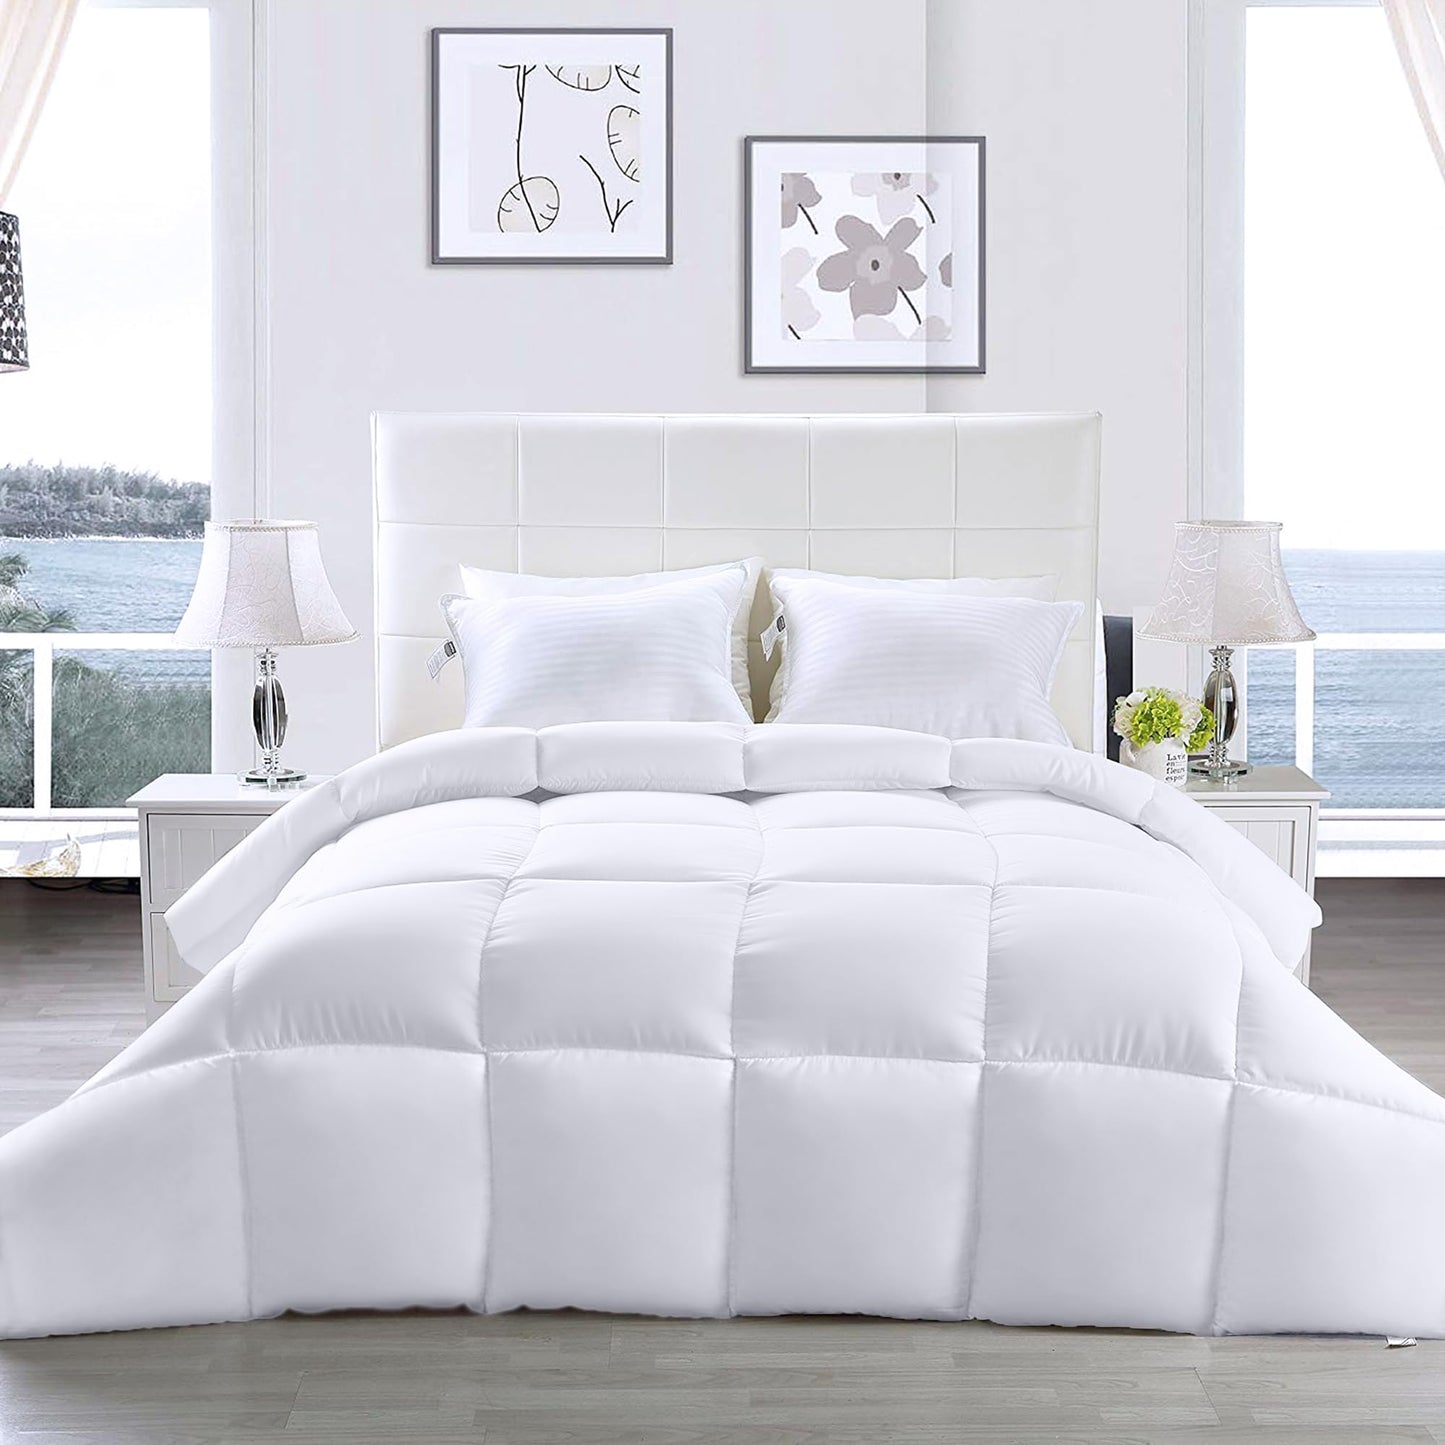 Utopia Bedding Comforter – All Season Comforter Full Size – White Comforter Full - Plush Siliconized Fiberfill - Box Stitched